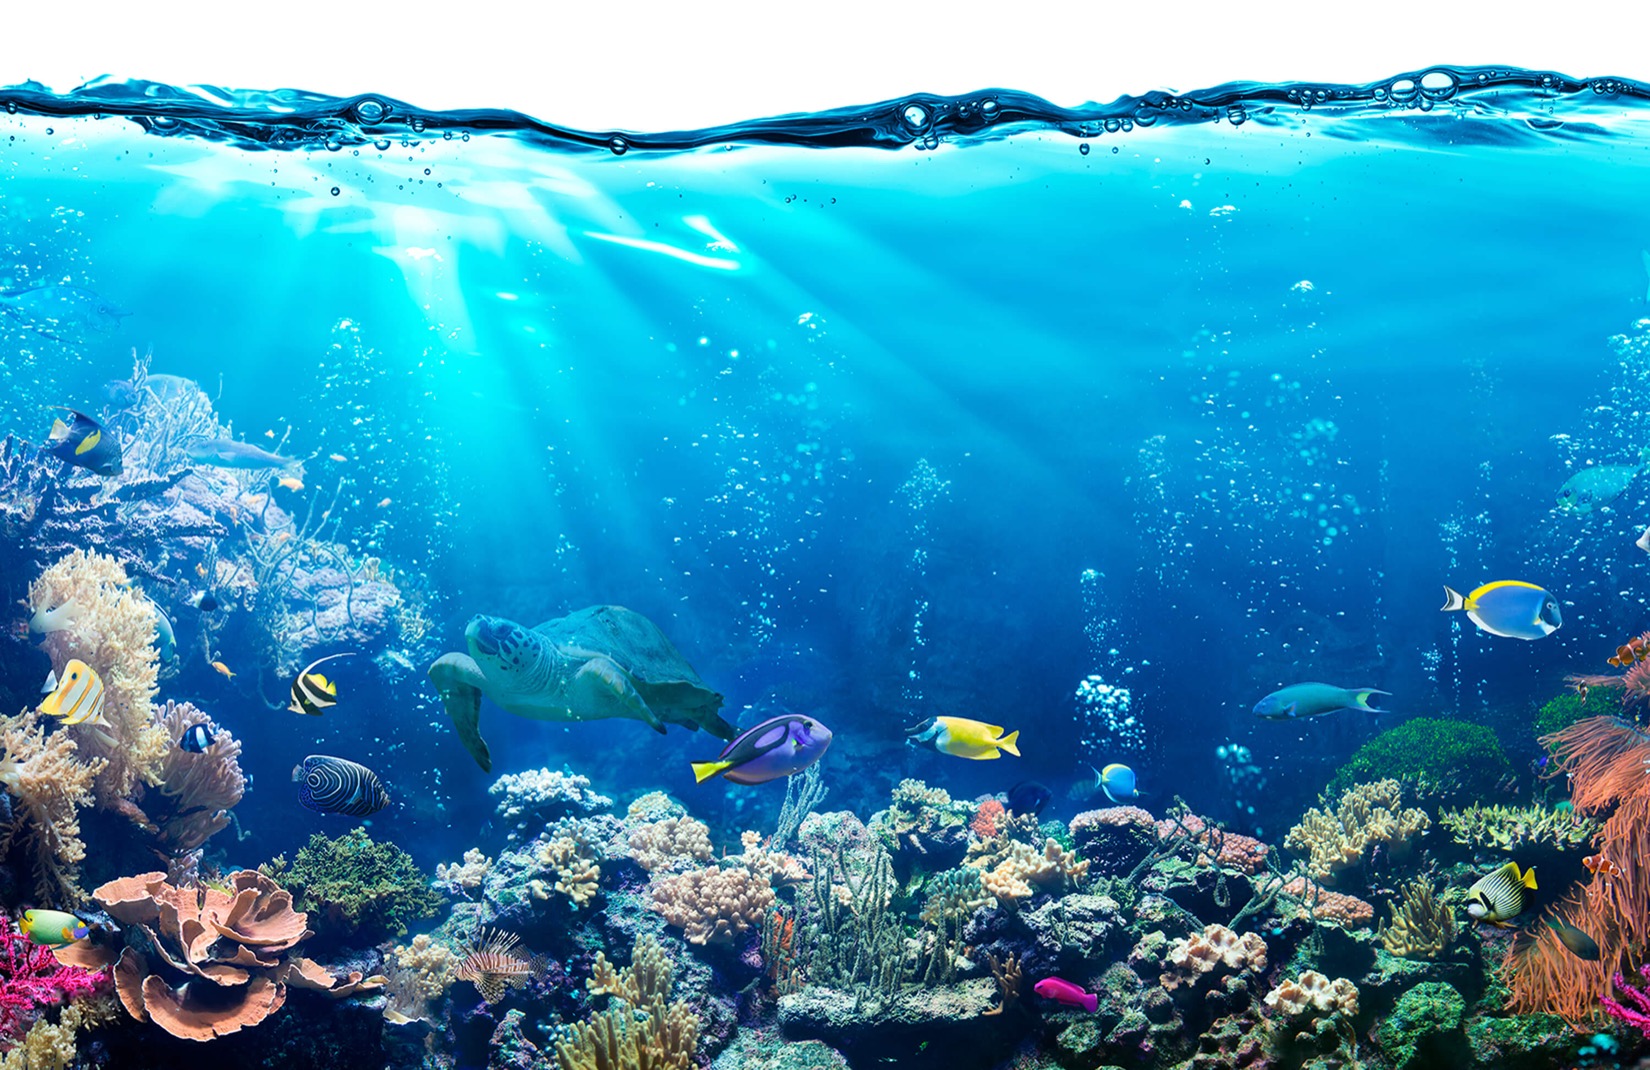 meer bilder wallpaper,korallenriff,unter wasser,riff,meeresbiologie,korallenrifffische